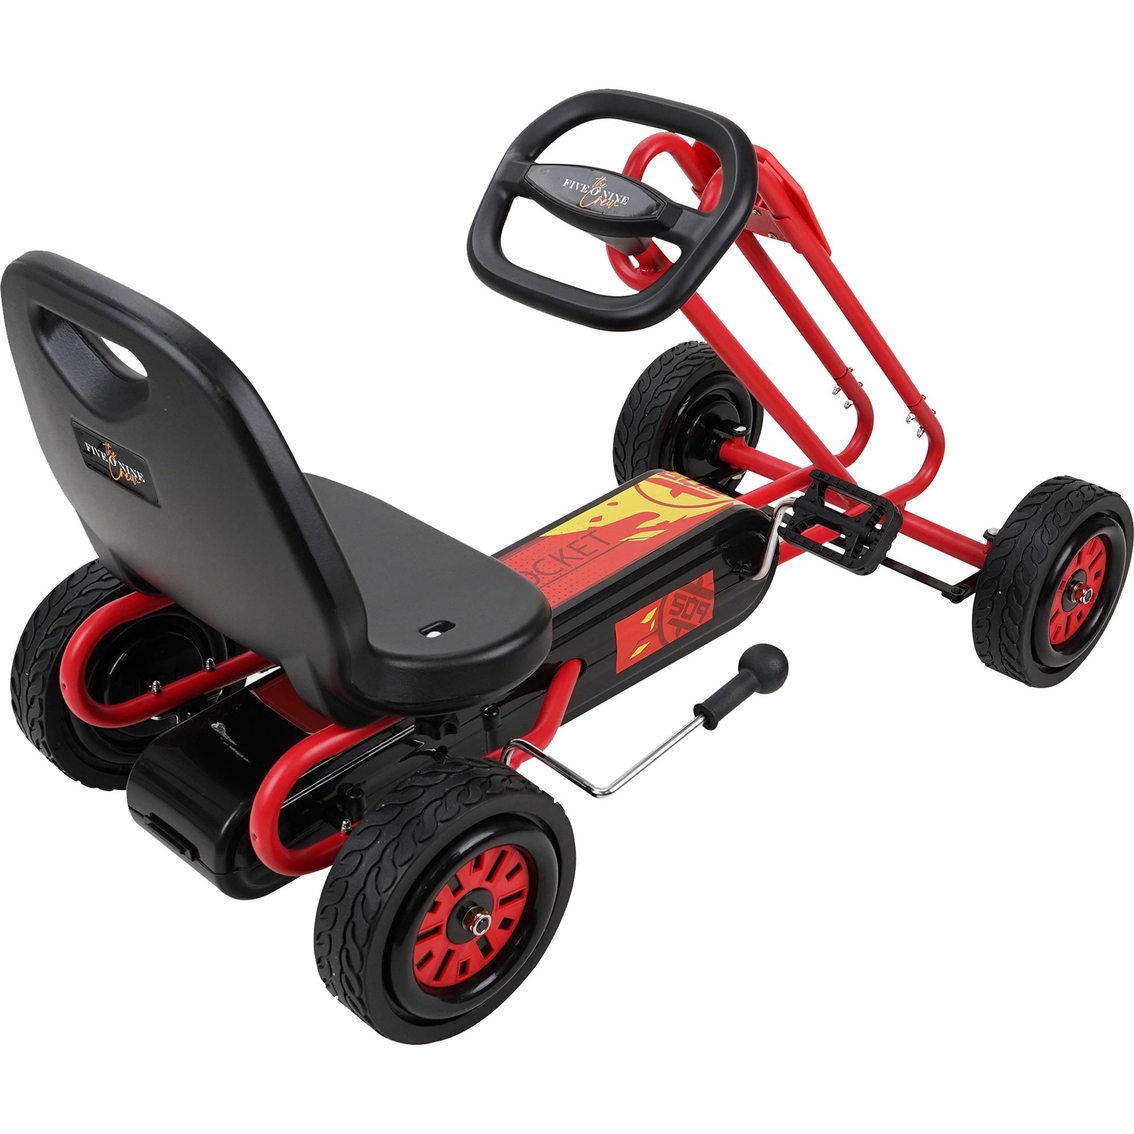 Rocket Red Pedal Go Kart for Kids - Image 5 of 5